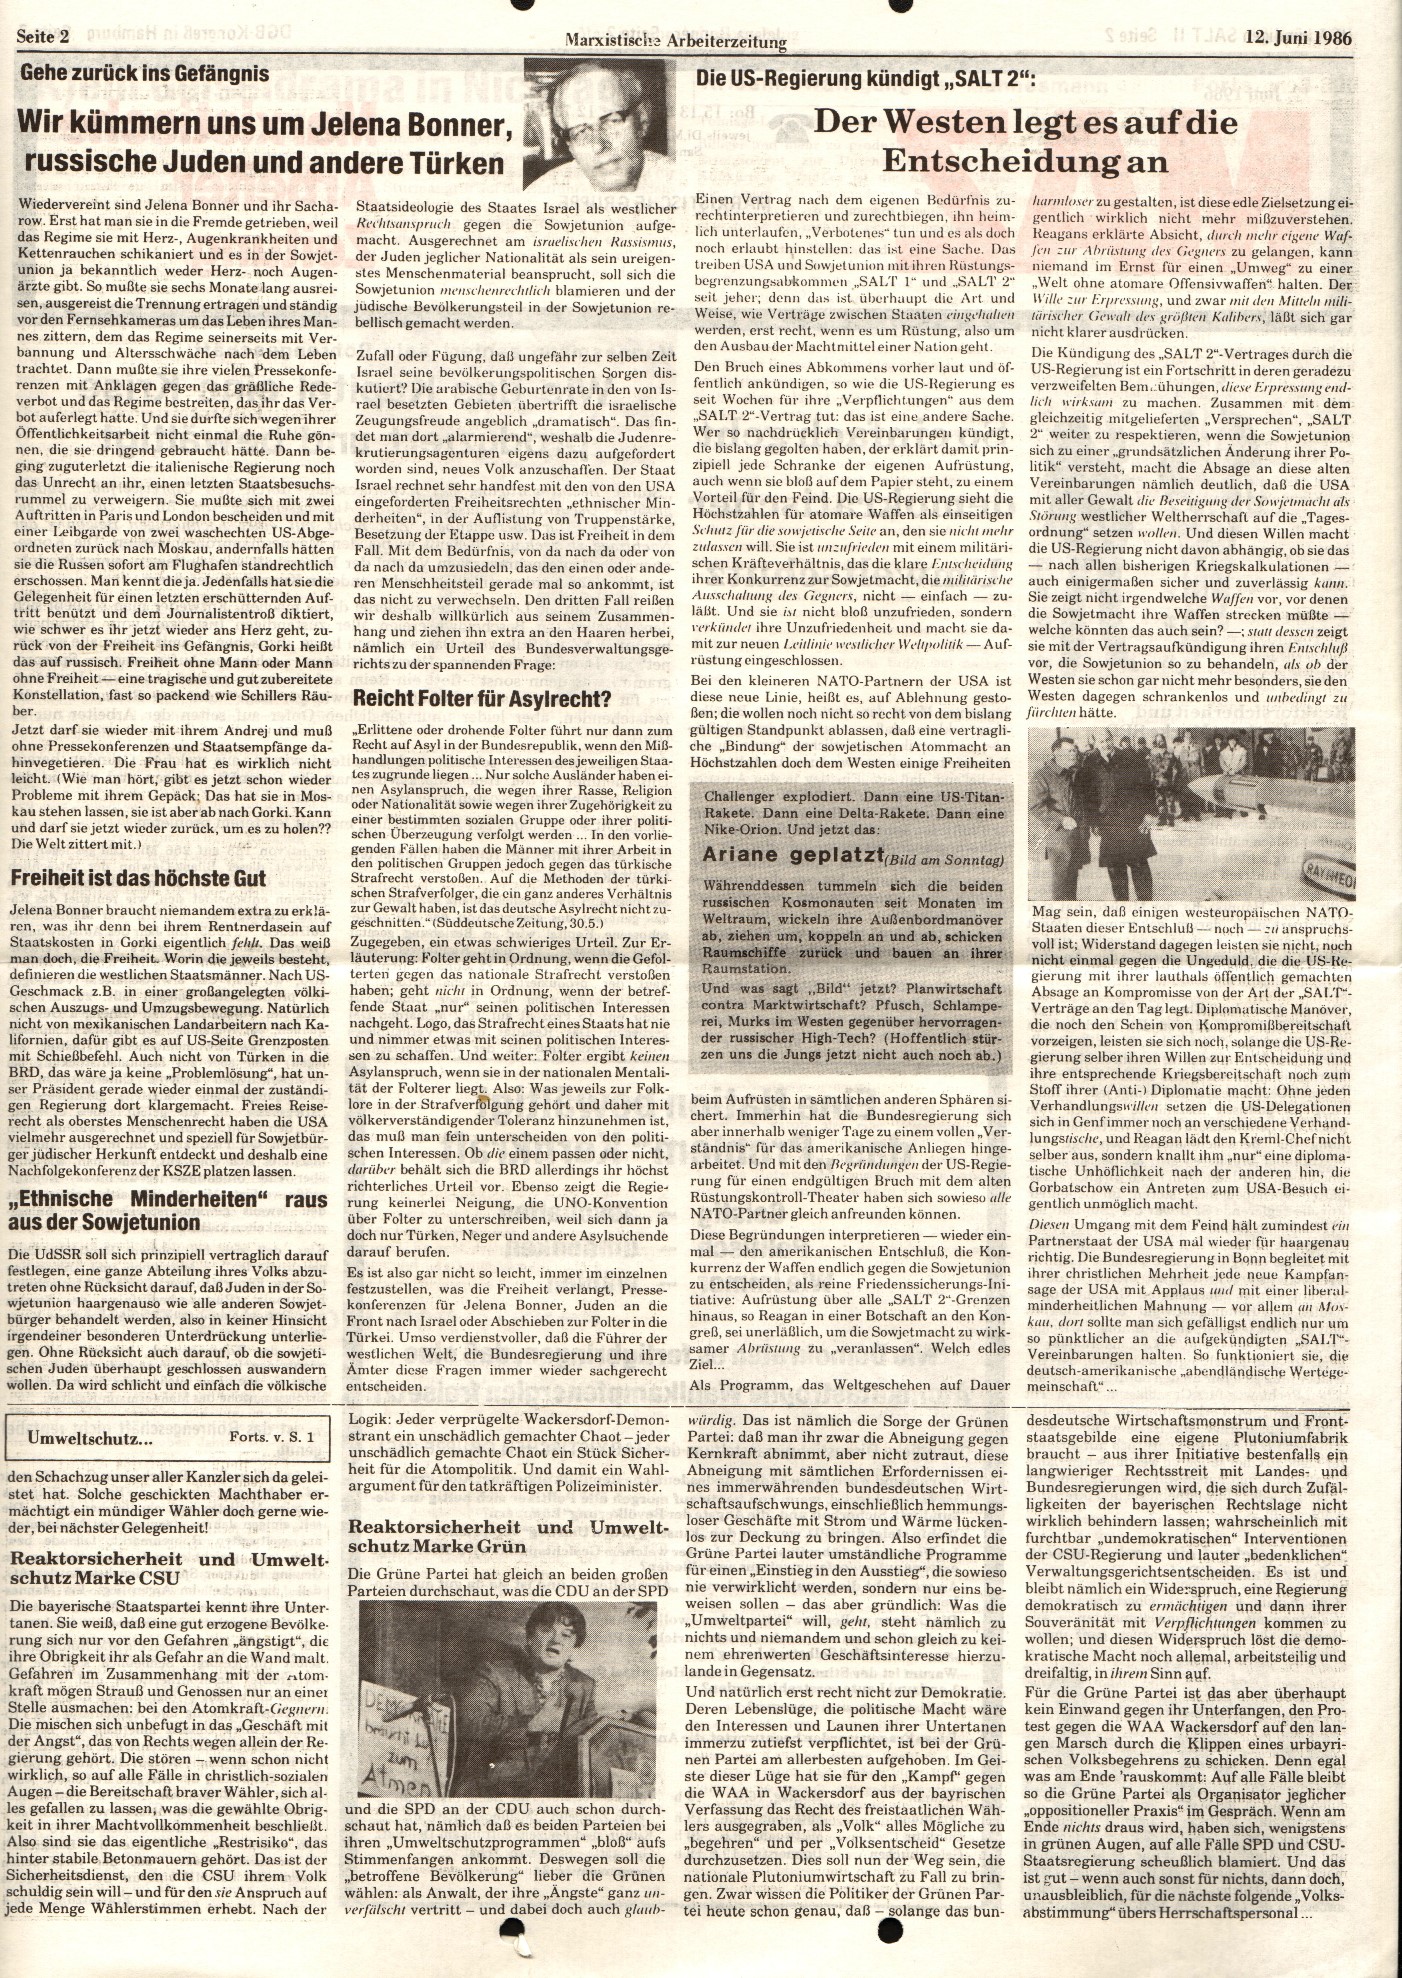 Ruhrgebiet_MG_Marxistische_Arbeiterzeitung_19860612_02